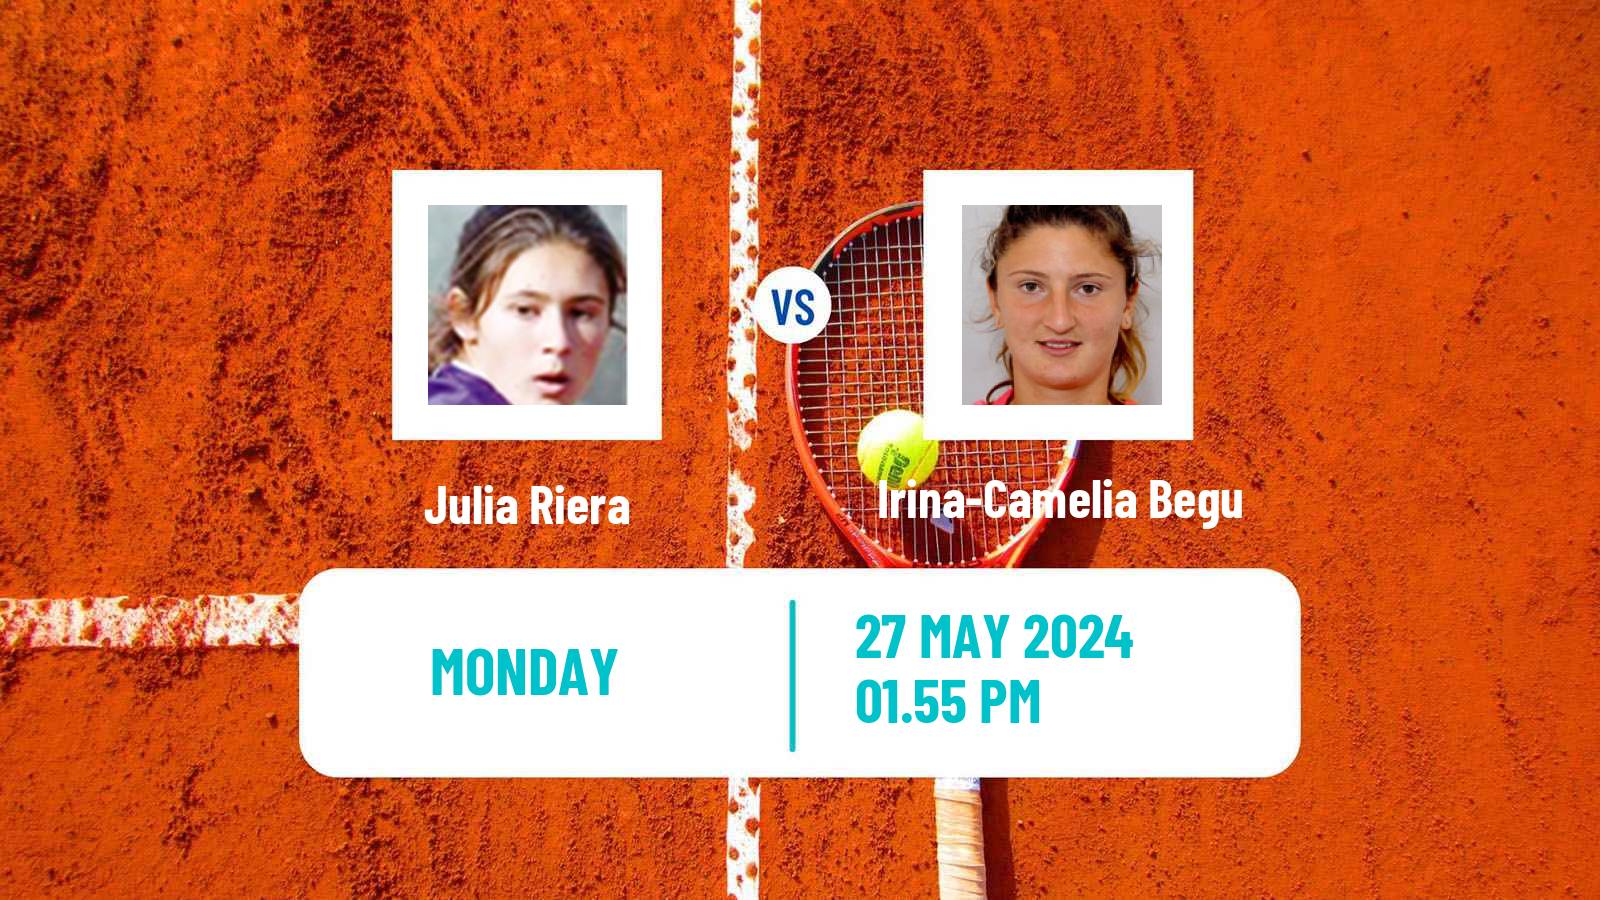 Tennis WTA Roland Garros Julia Riera - Irina-Camelia Begu